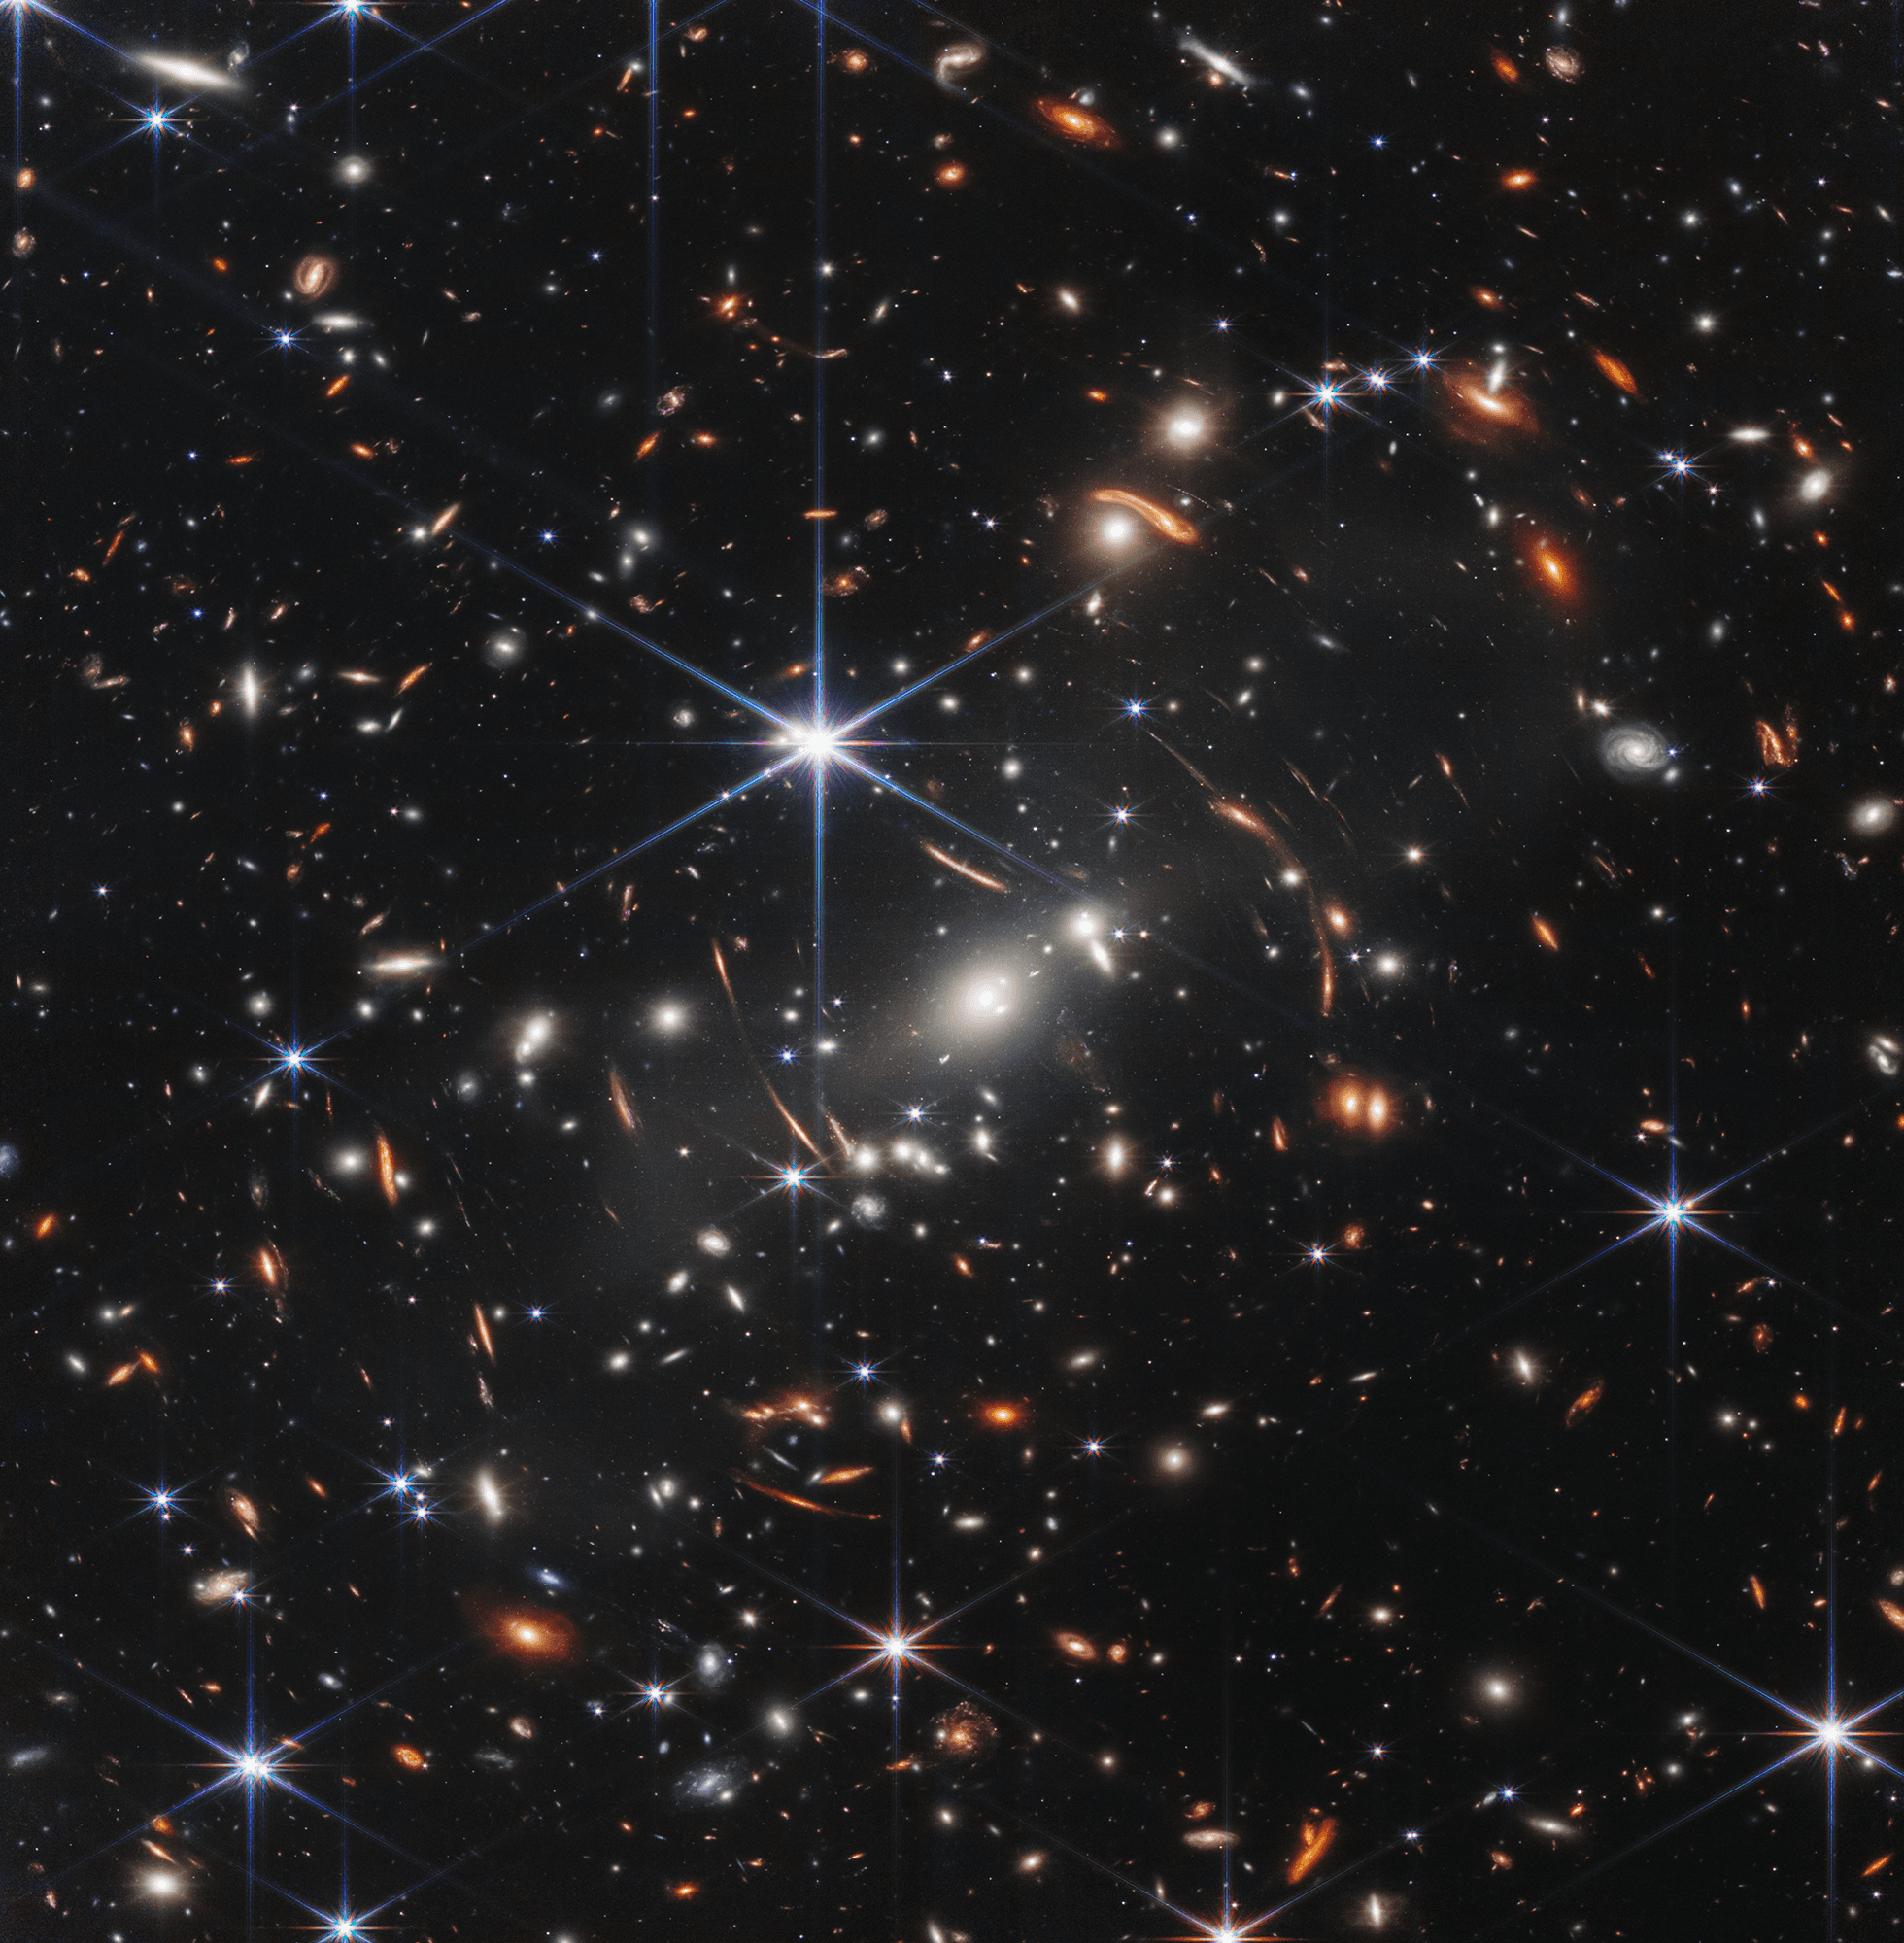 صورة للكون العميق جدّاً تحوي مجرّات كثيرة مختلفة وتظهر بعض نجوم المقدّمة المدبّبة